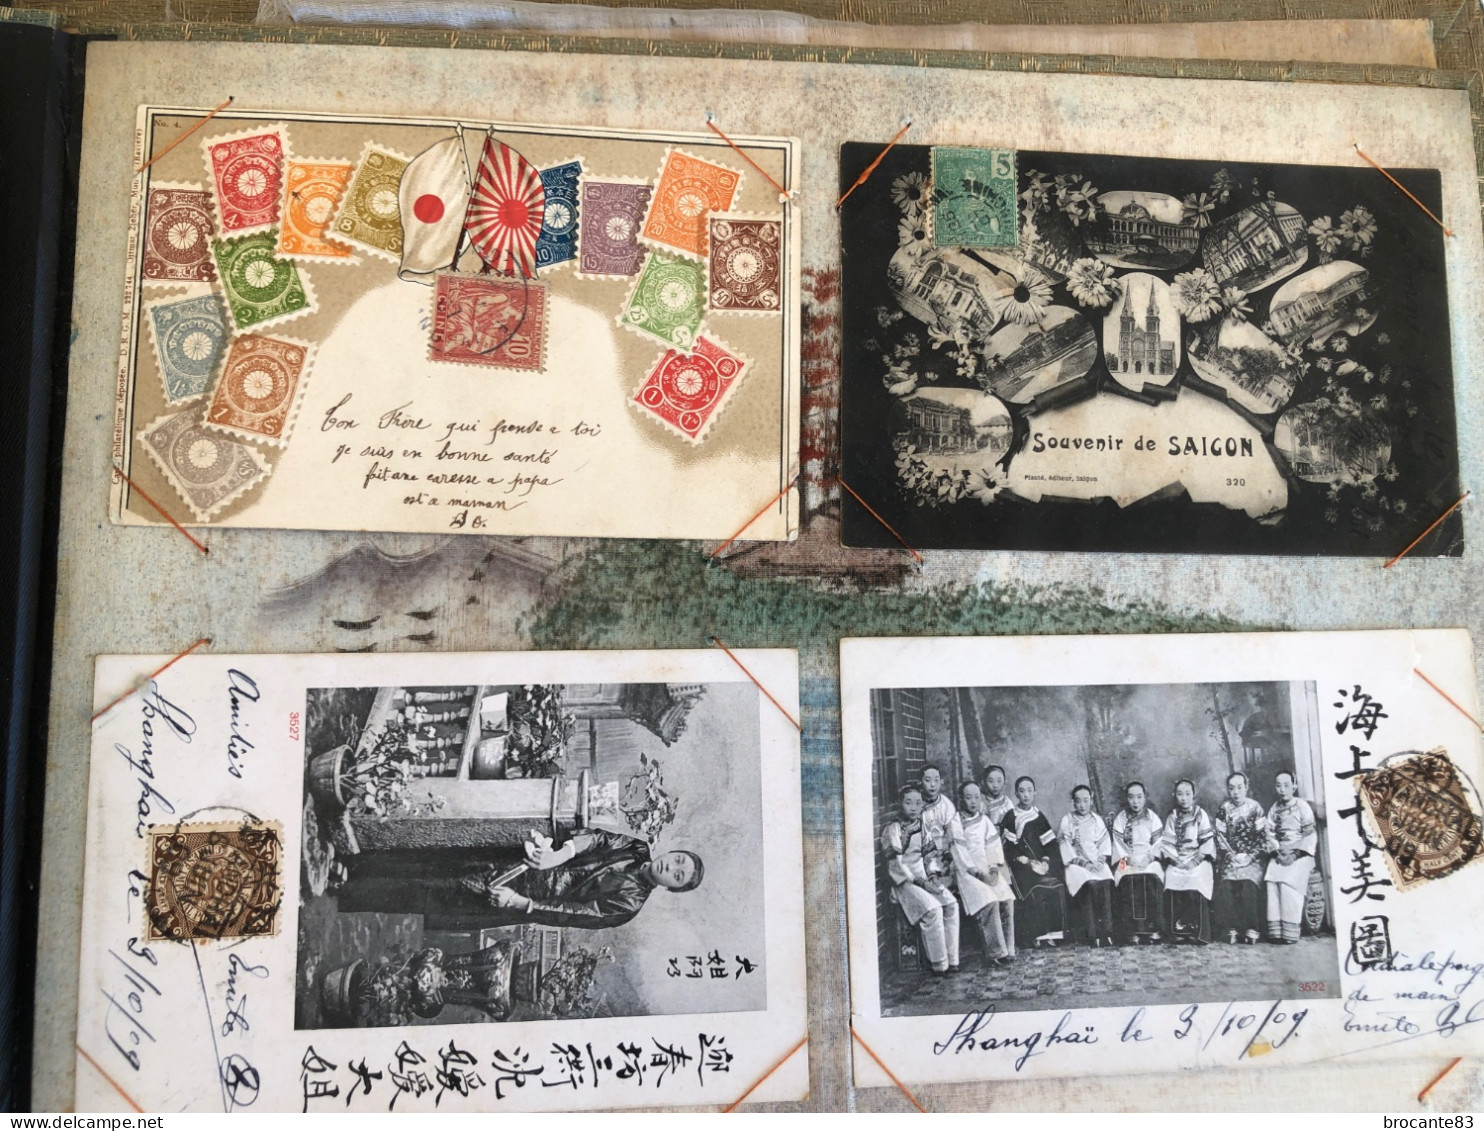 Album de 65 carte postale Asie Chine Japon  principalement adressé á la même personne